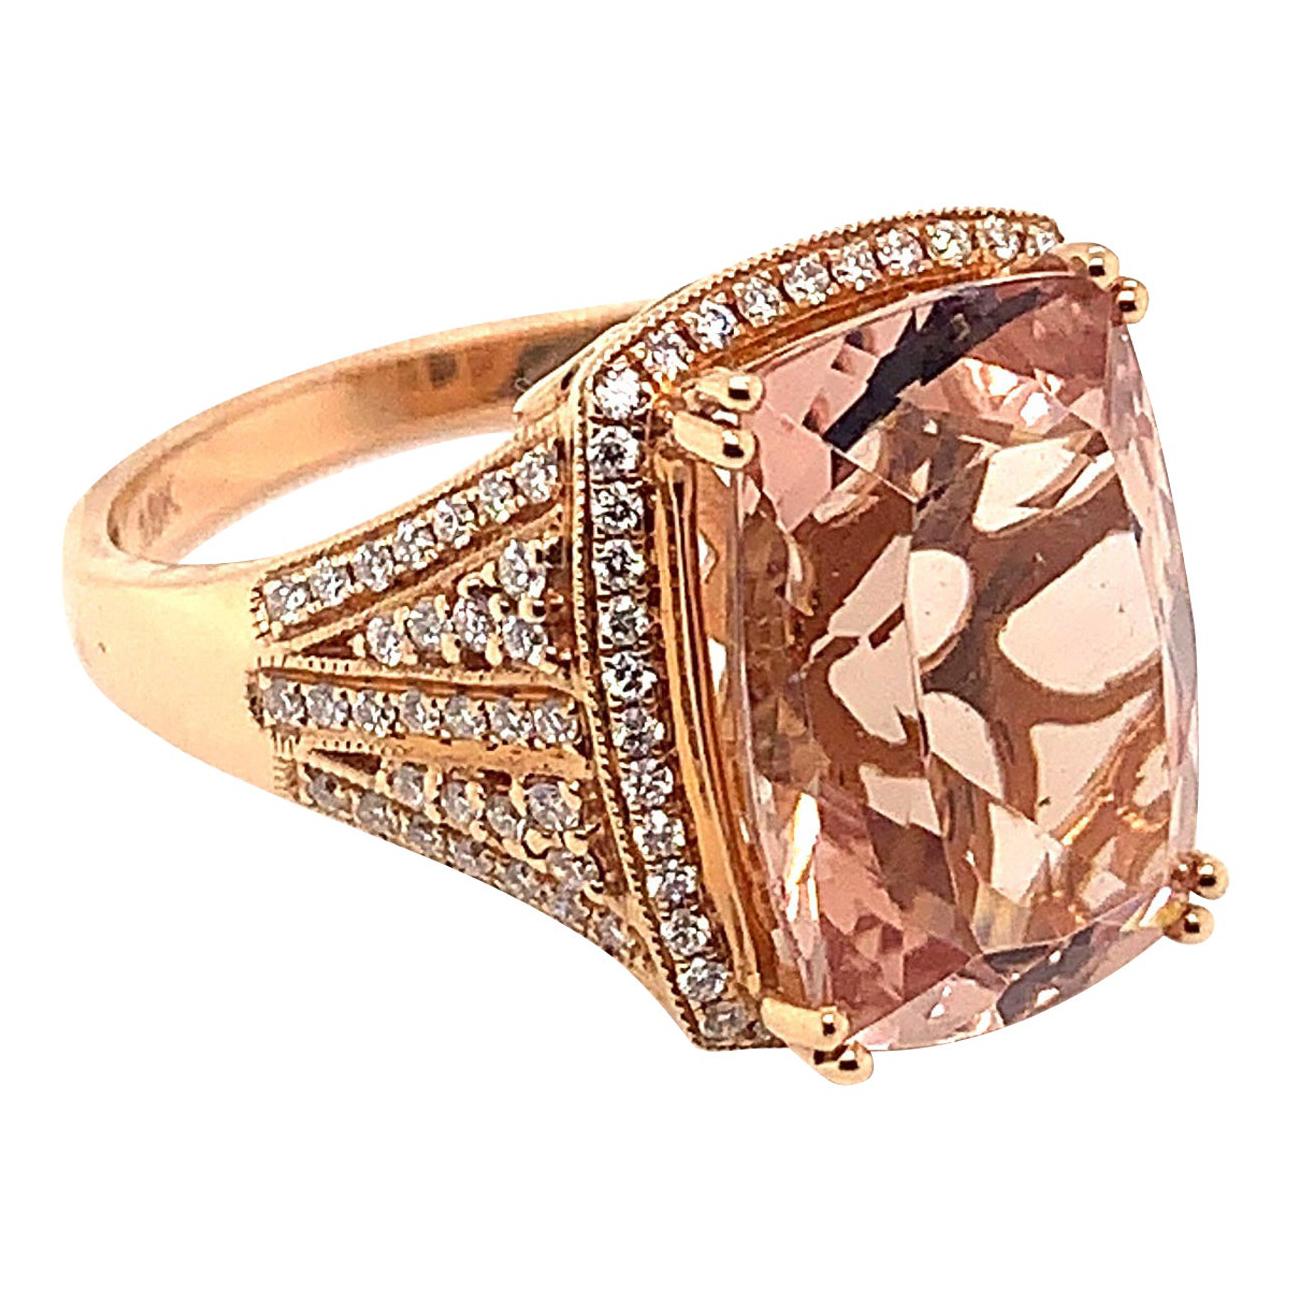 6.49 Carat Cushion Shaped Morganite Ring in 18 Karat Rose Gold with Diamonds